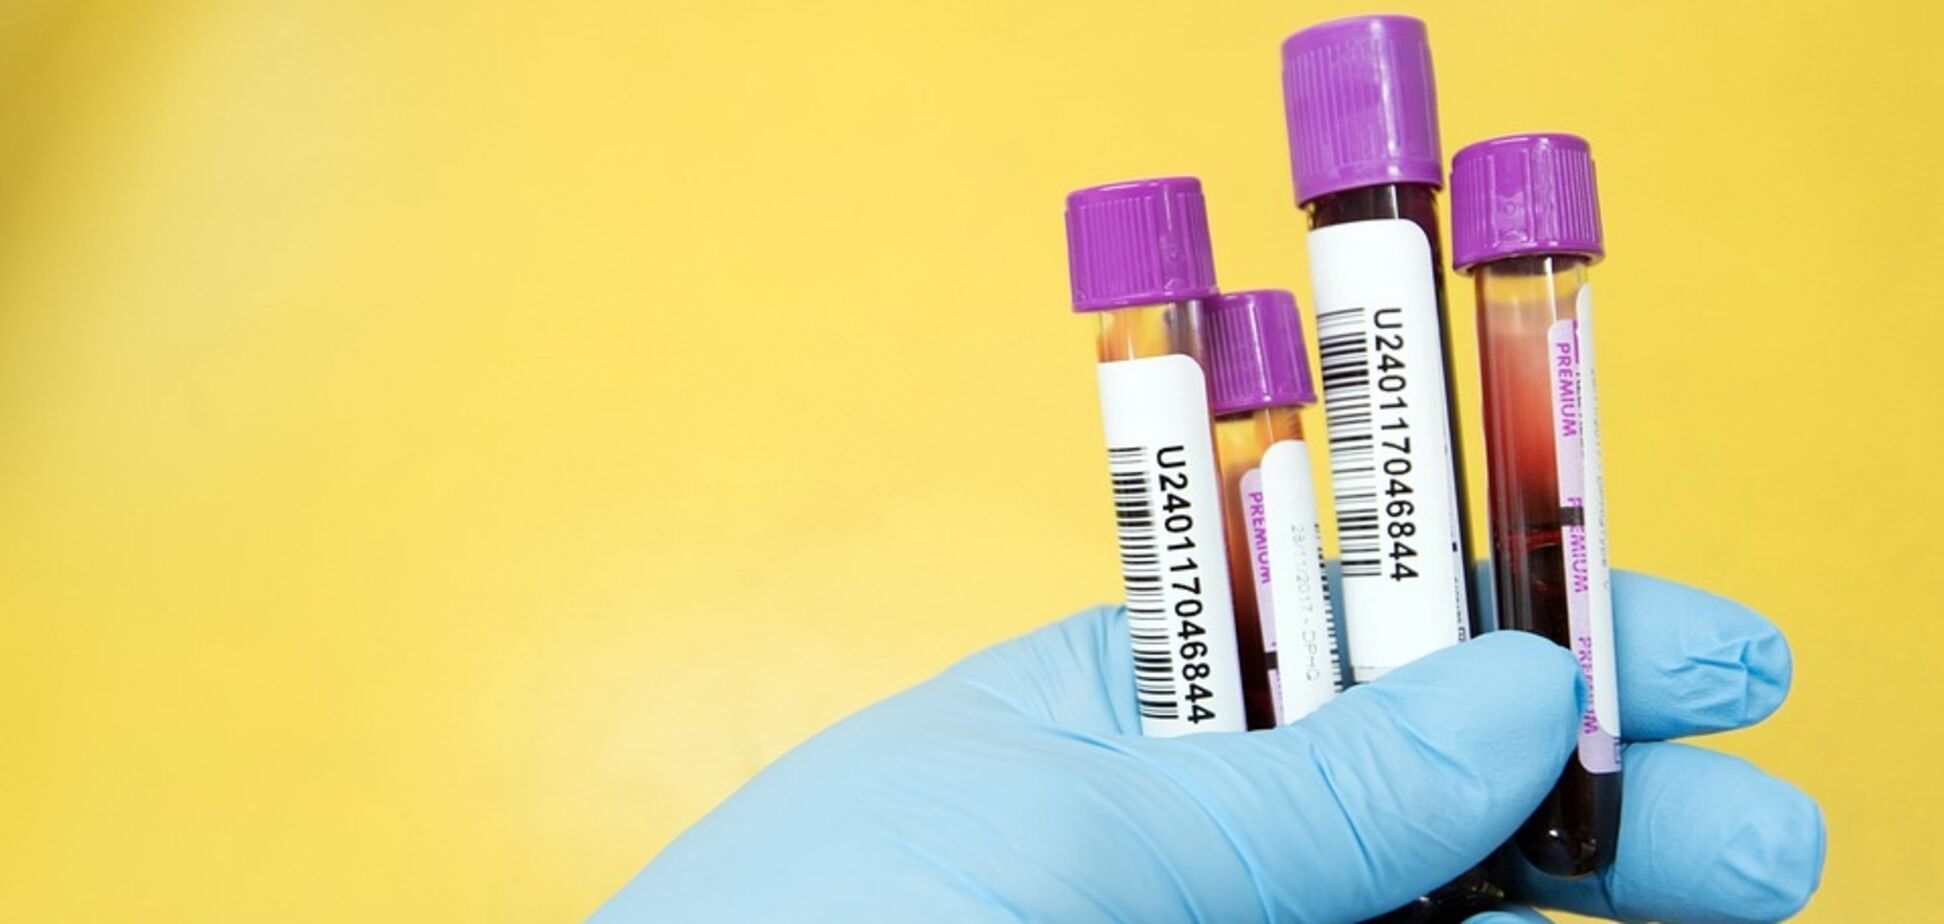 Існує два основних типи тестів на коронавірус